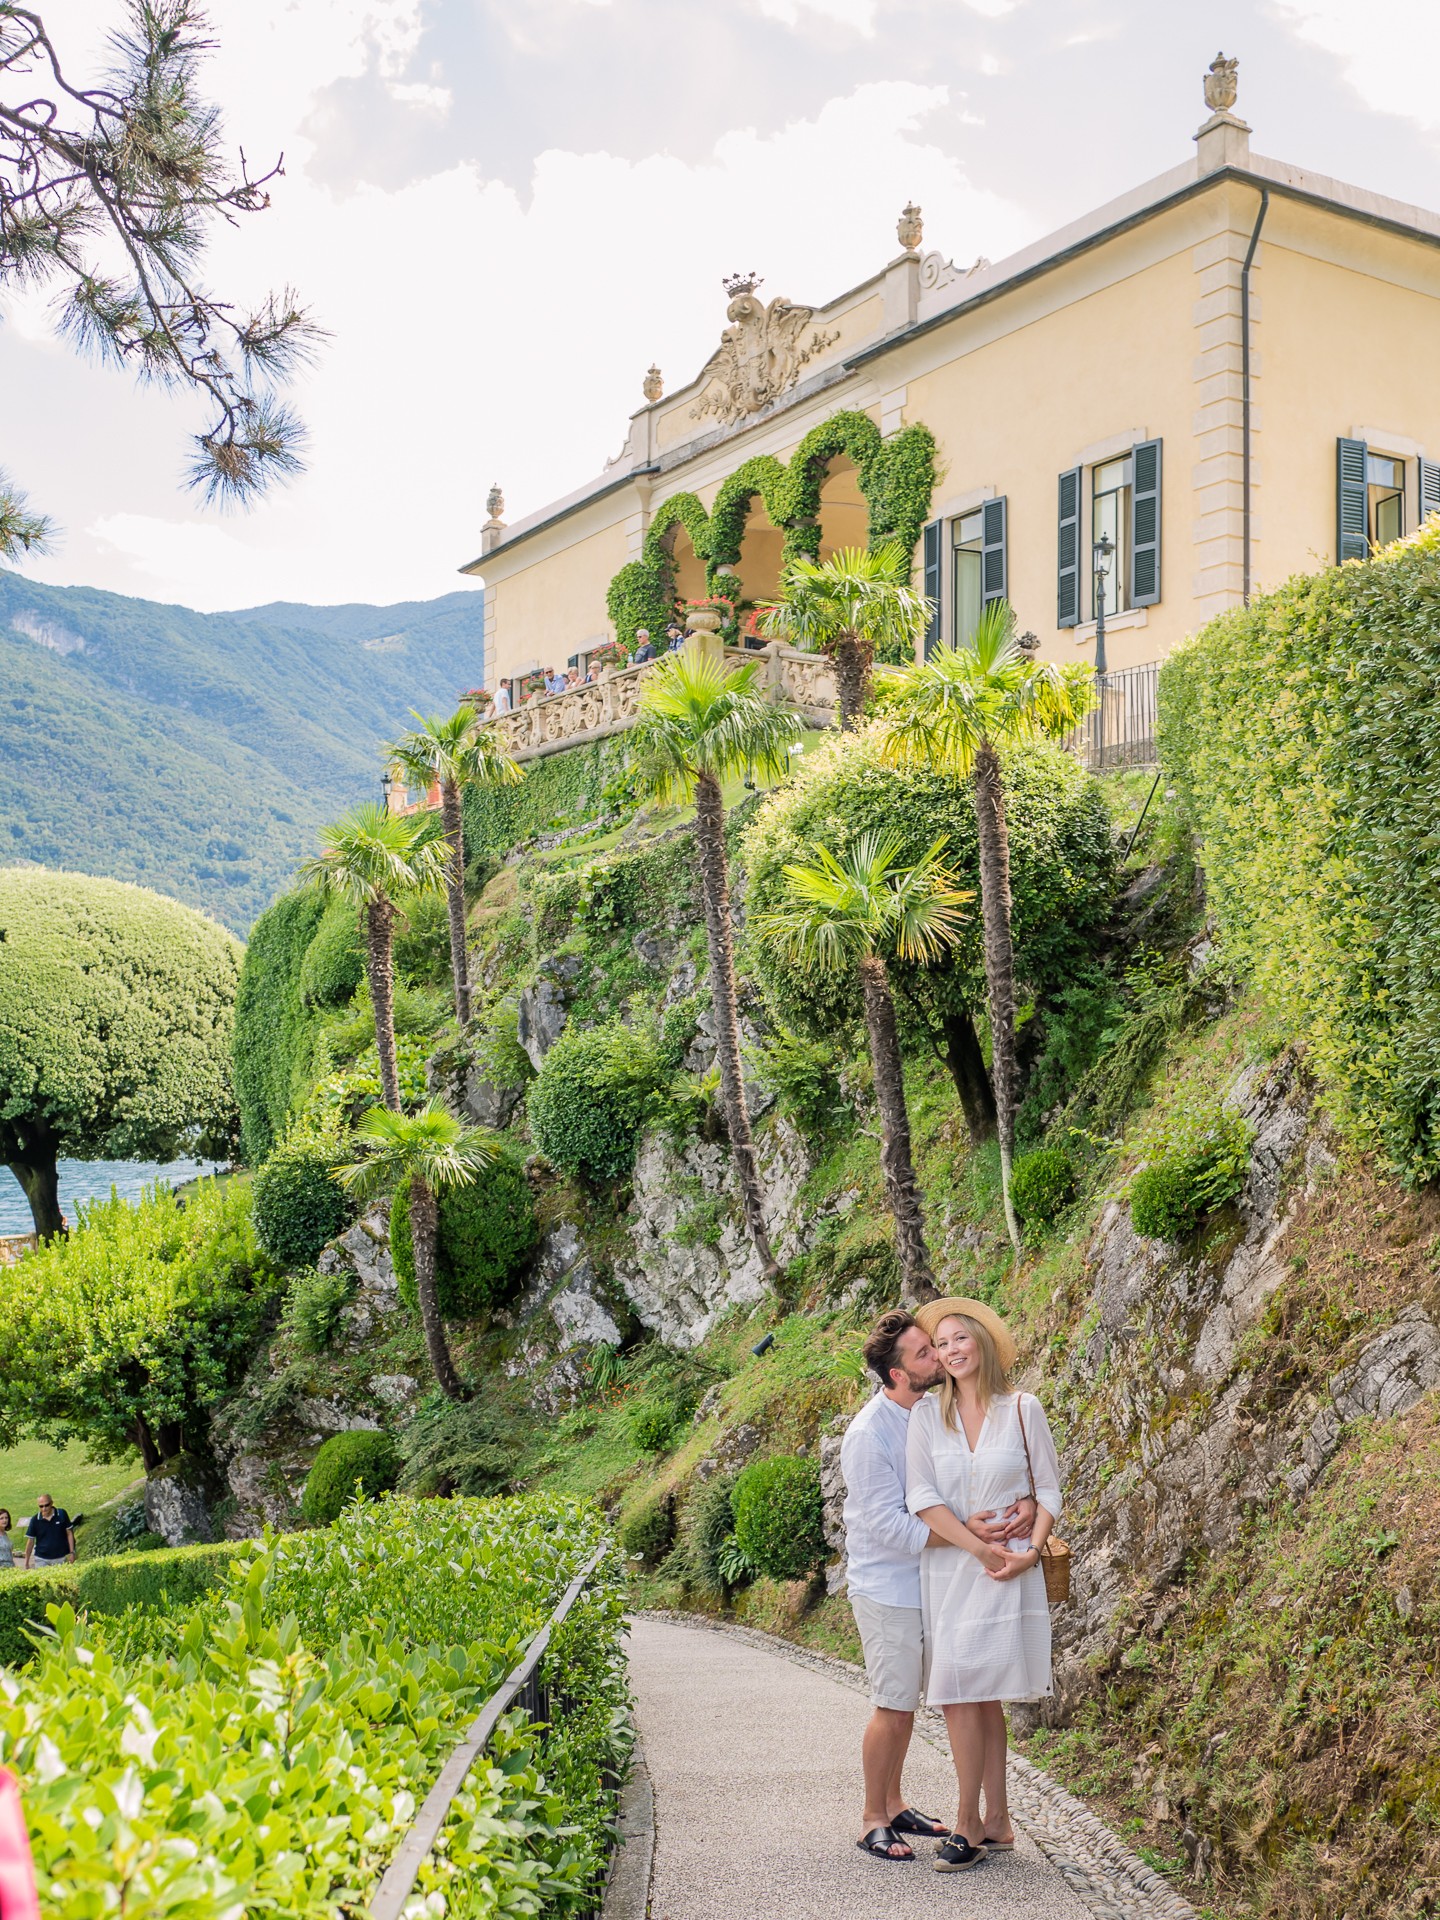 Romantic couple photo shoot in Como Italy Villa Balbianello